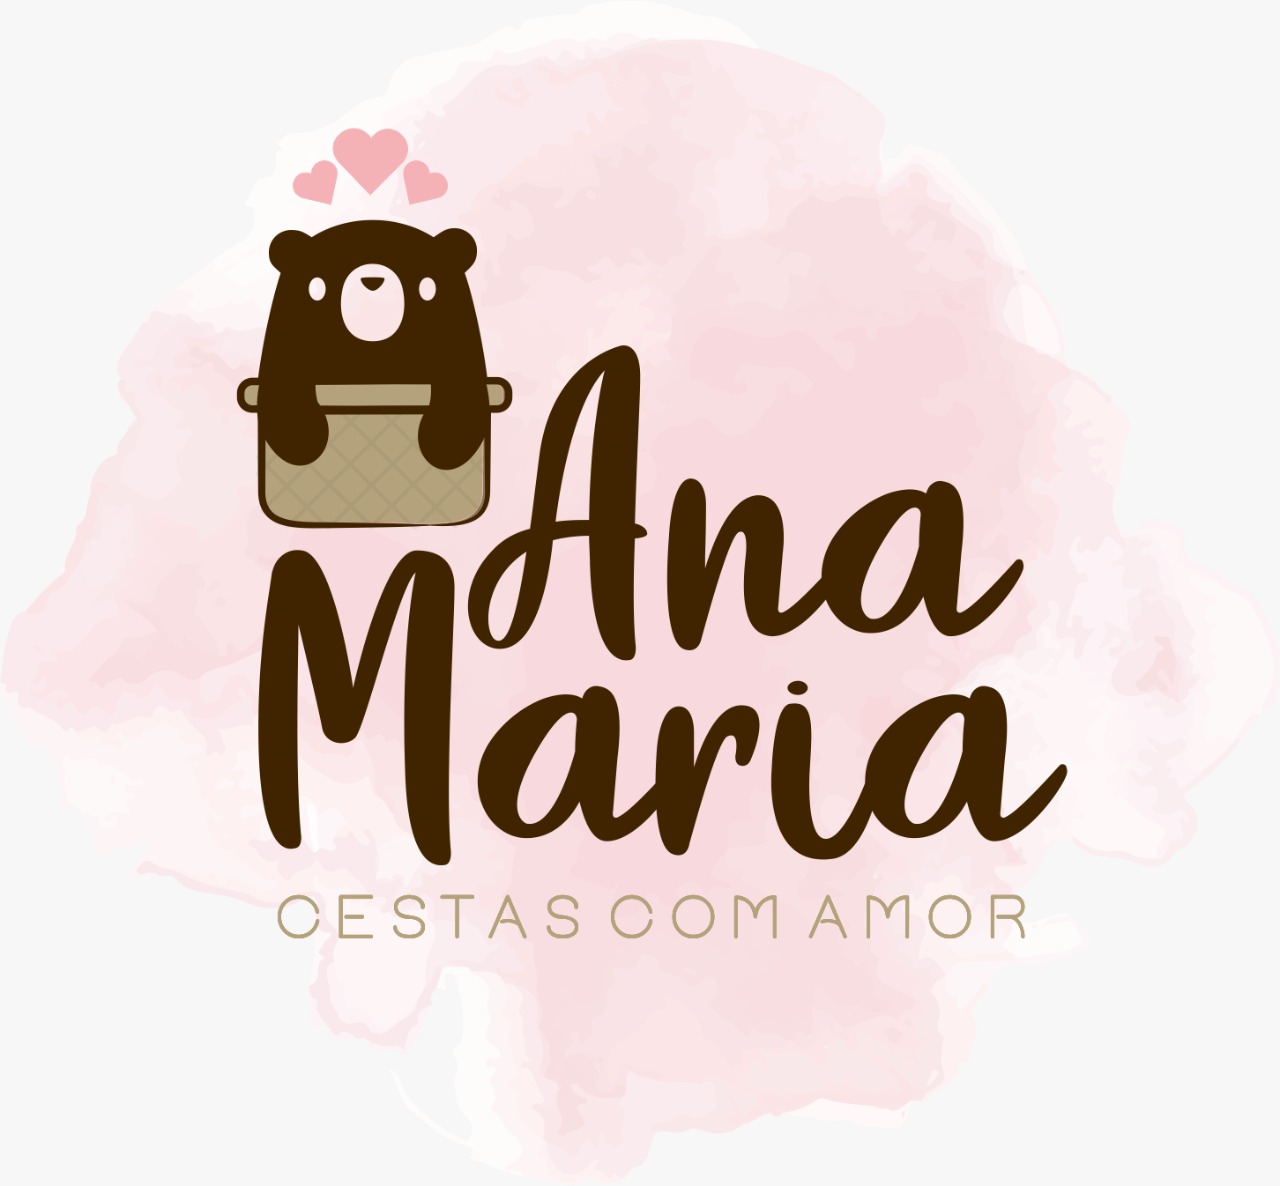 Ana Maria Cestas